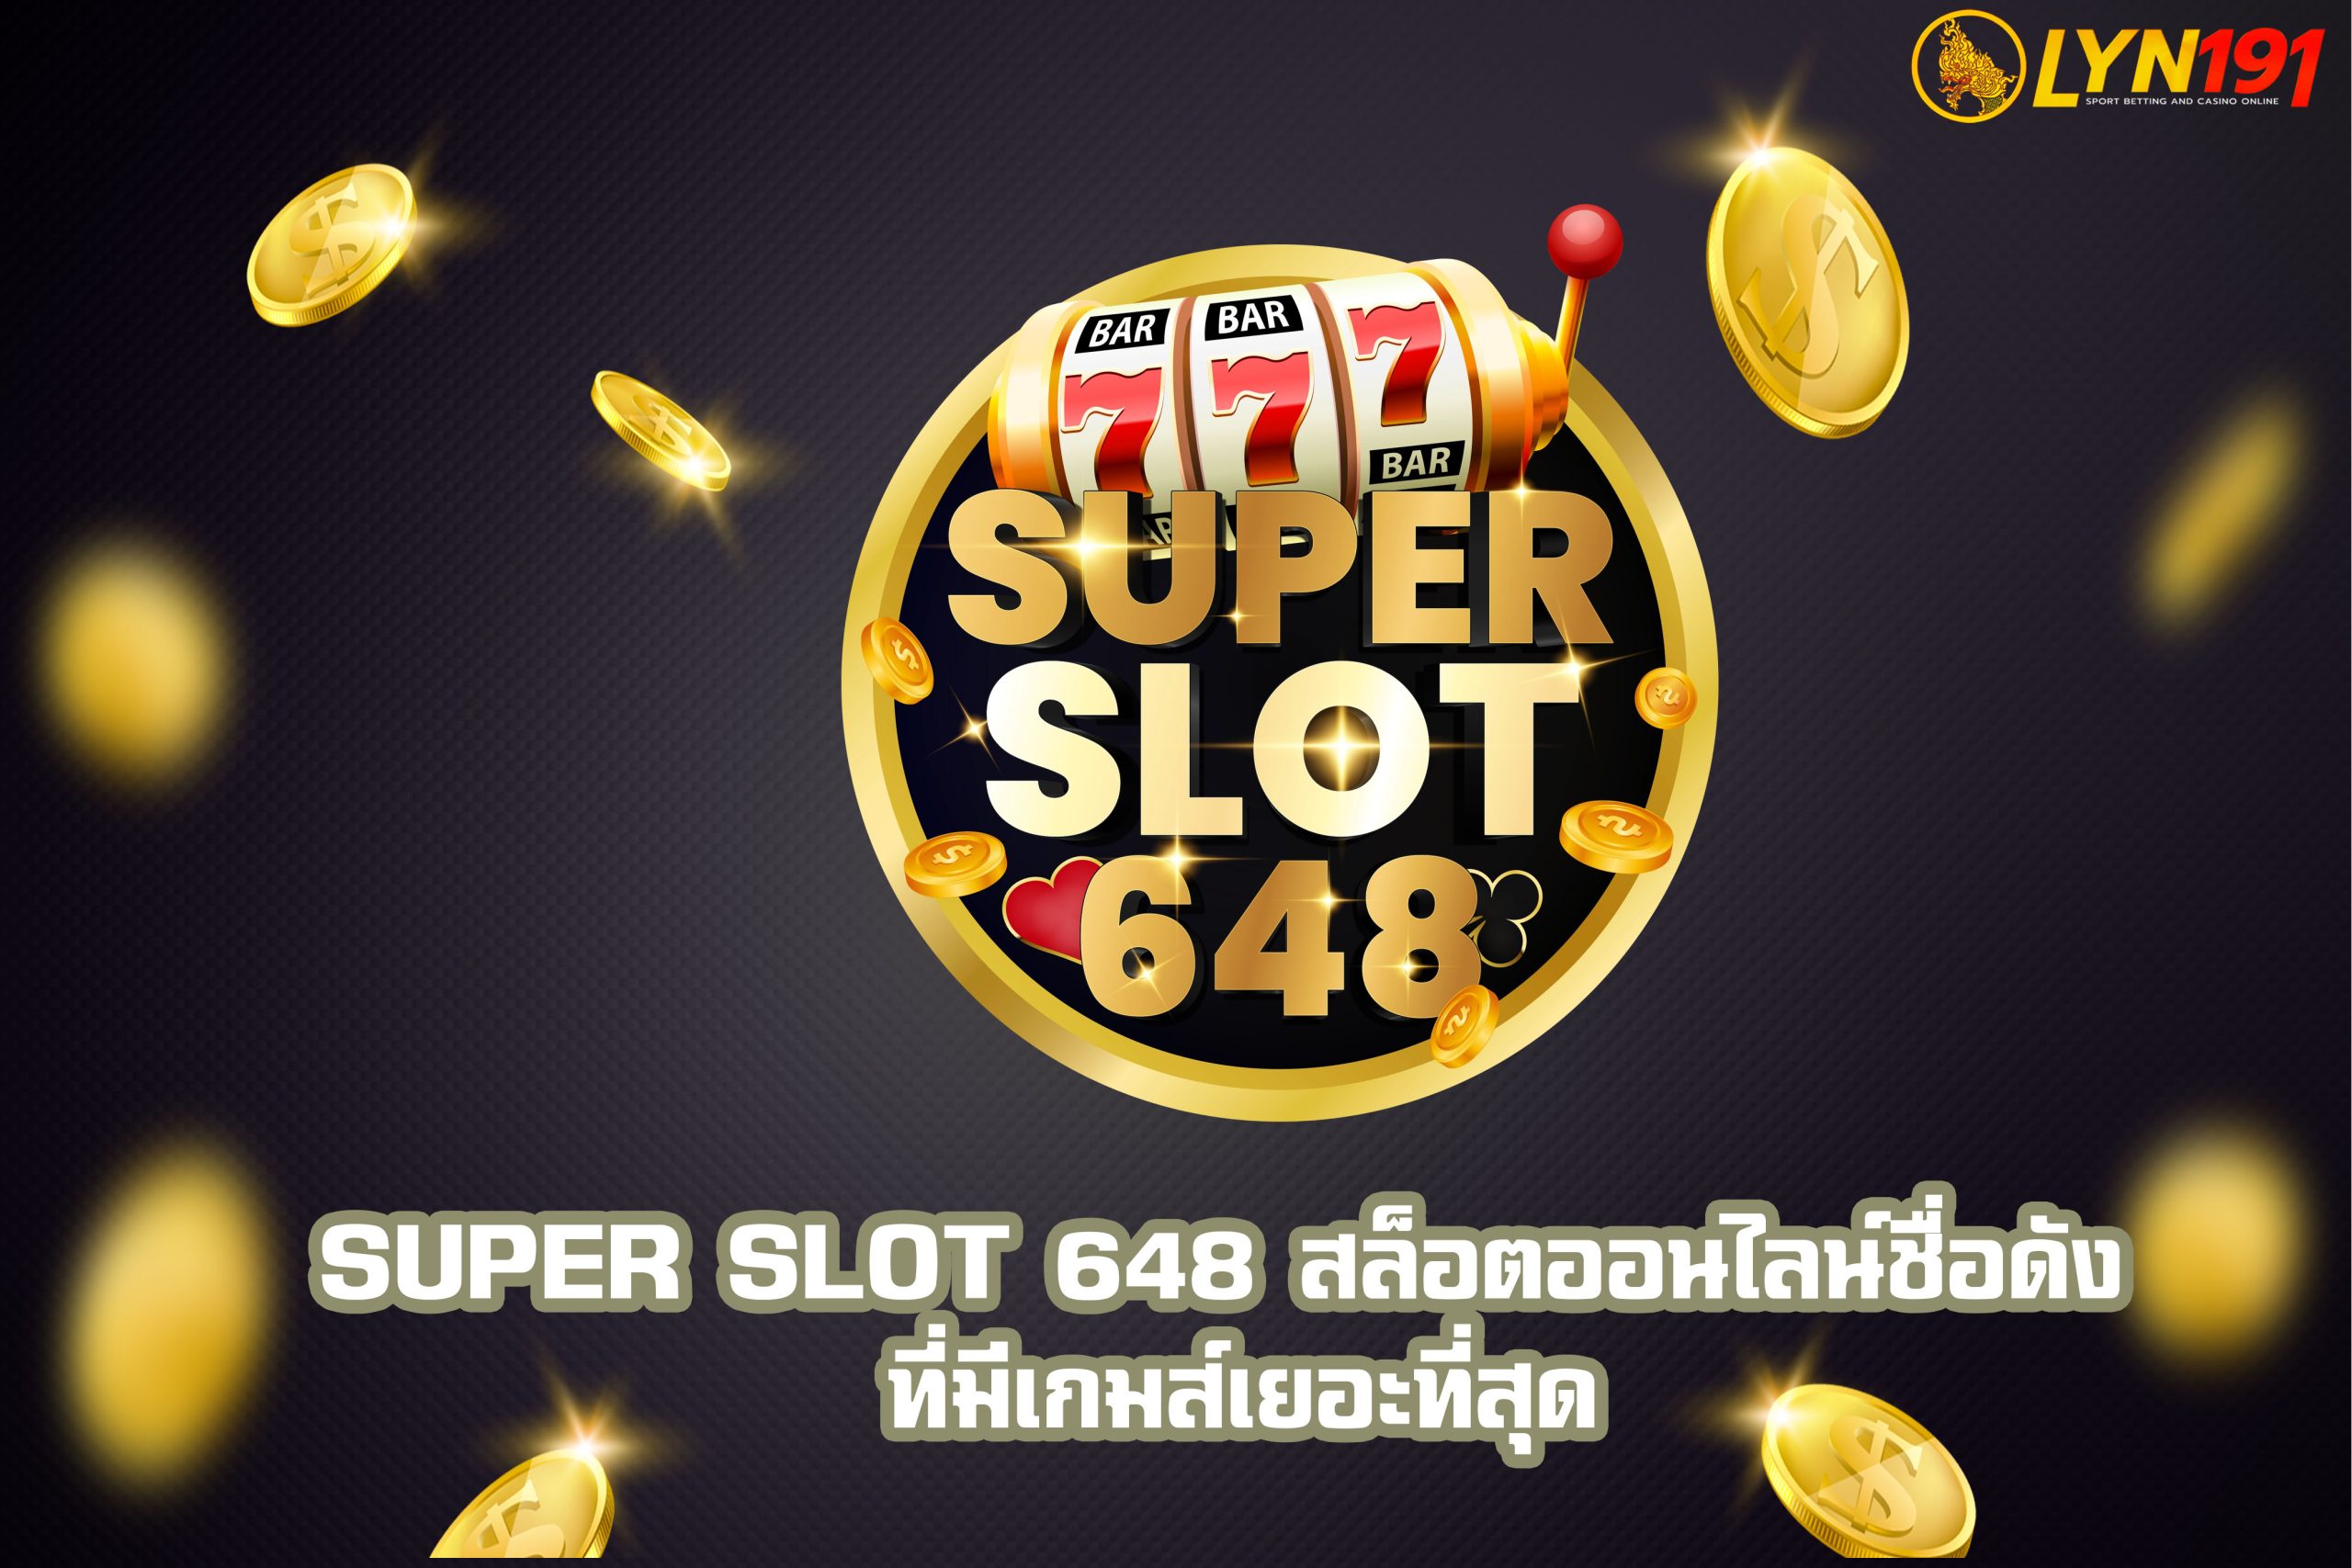 SUPER SLOT 648 สล็อตออนไลน์ชื่อดัง ที่มีเกมส์เยอะที่สุด